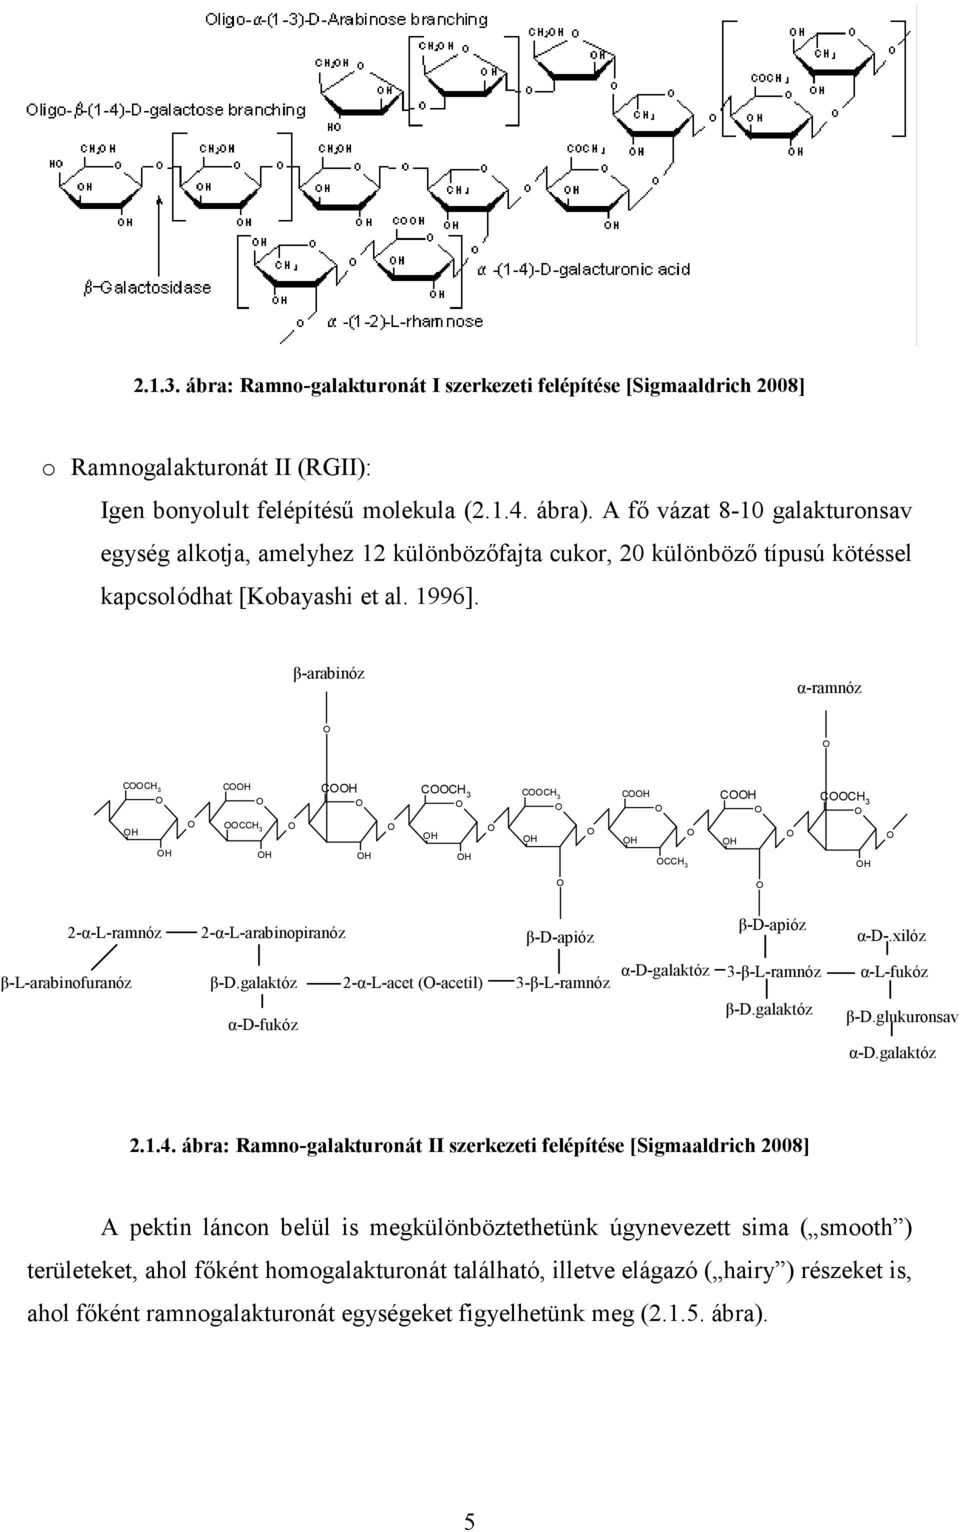 β-arabinóz α-ramnóz CC 3 C CC 3 C CC 3 CC 3 C CC 3 C CC 3 2-α-L-ramnóz 2-α-L-arabinopiranóz β-d-apióz β-d-apióz α-d-.xilóz β-l-arabinofuranóz β-d.